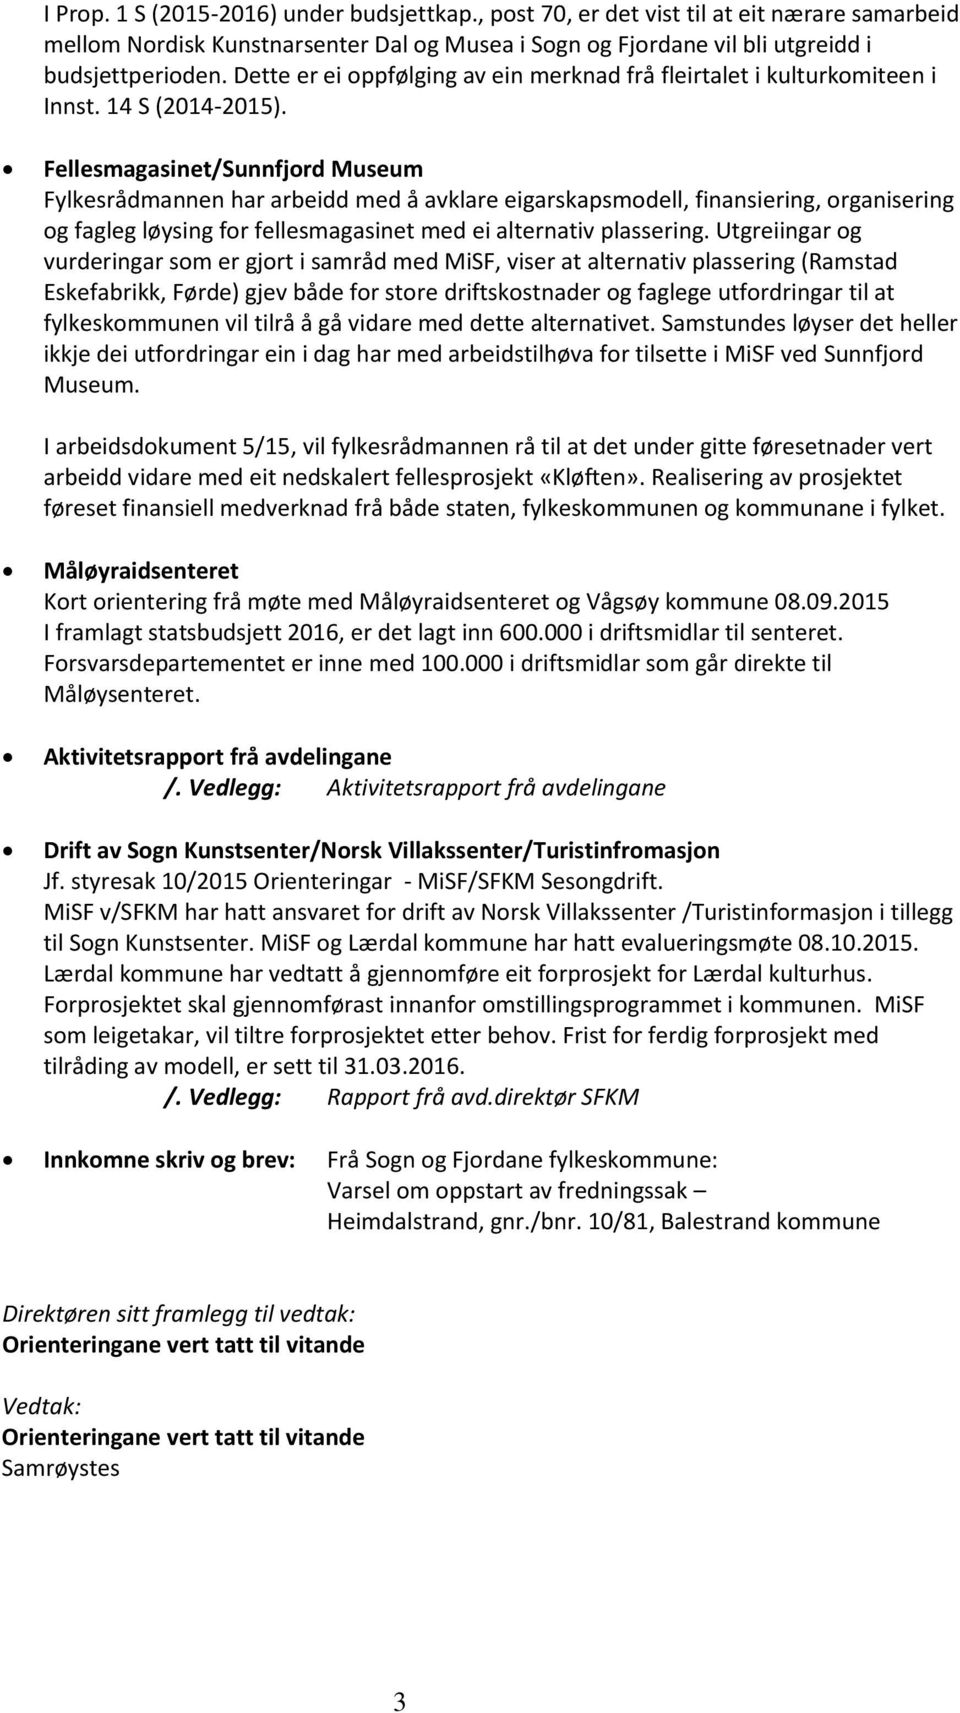 Fellesmagasinet/Sunnfjord Museum Fylkesrådmannen har arbeidd med å avklare eigarskapsmodell, finansiering, organisering og fagleg løysing for fellesmagasinet med ei alternativ plassering.